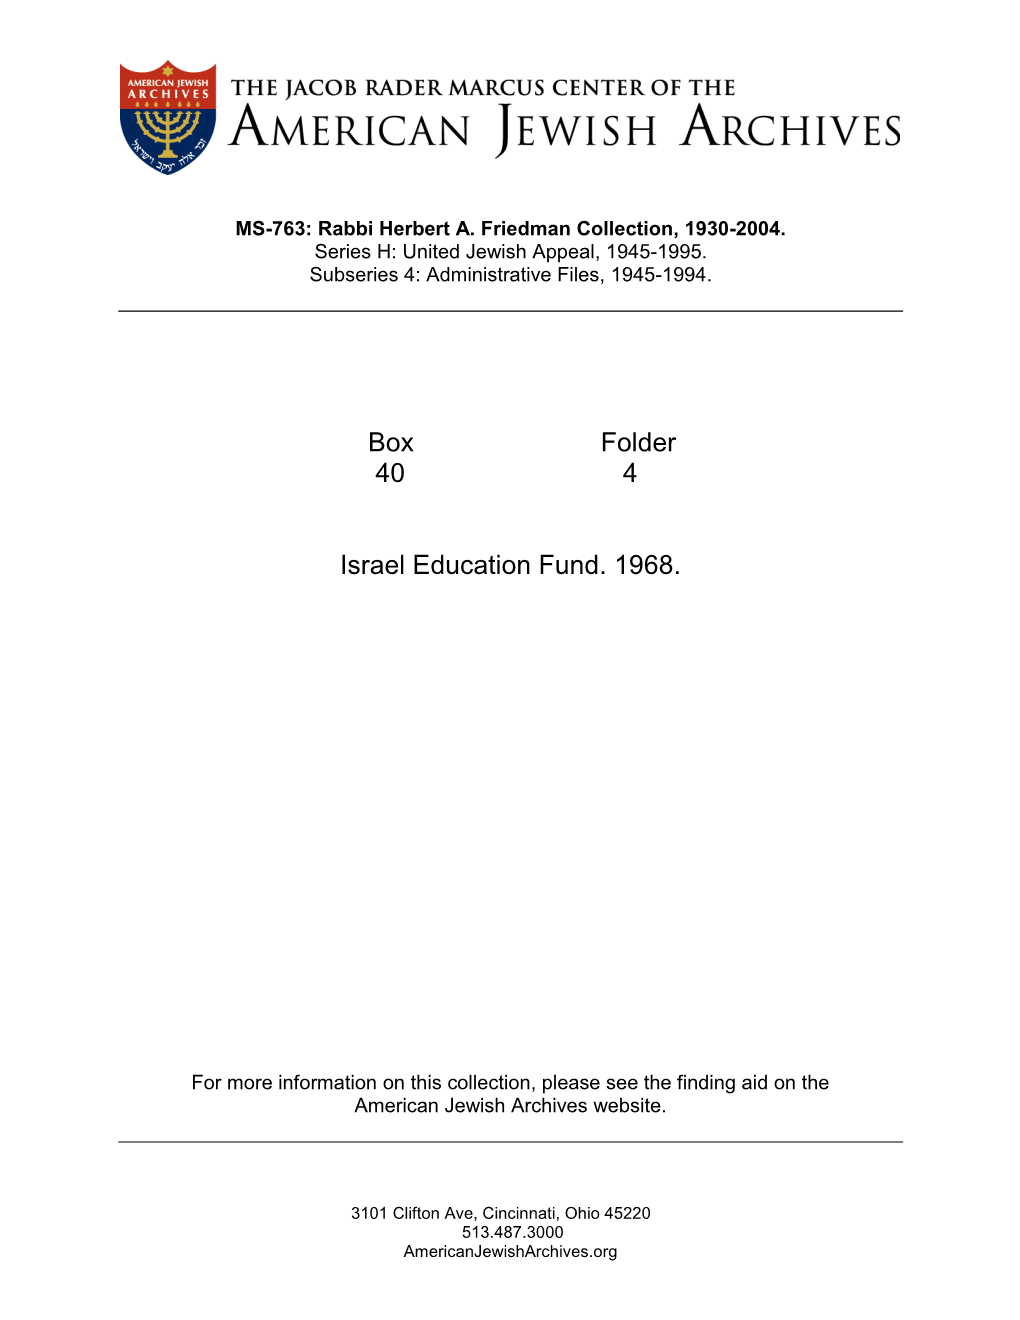 Box Folder 40 4 Israel Education Fund. 1968